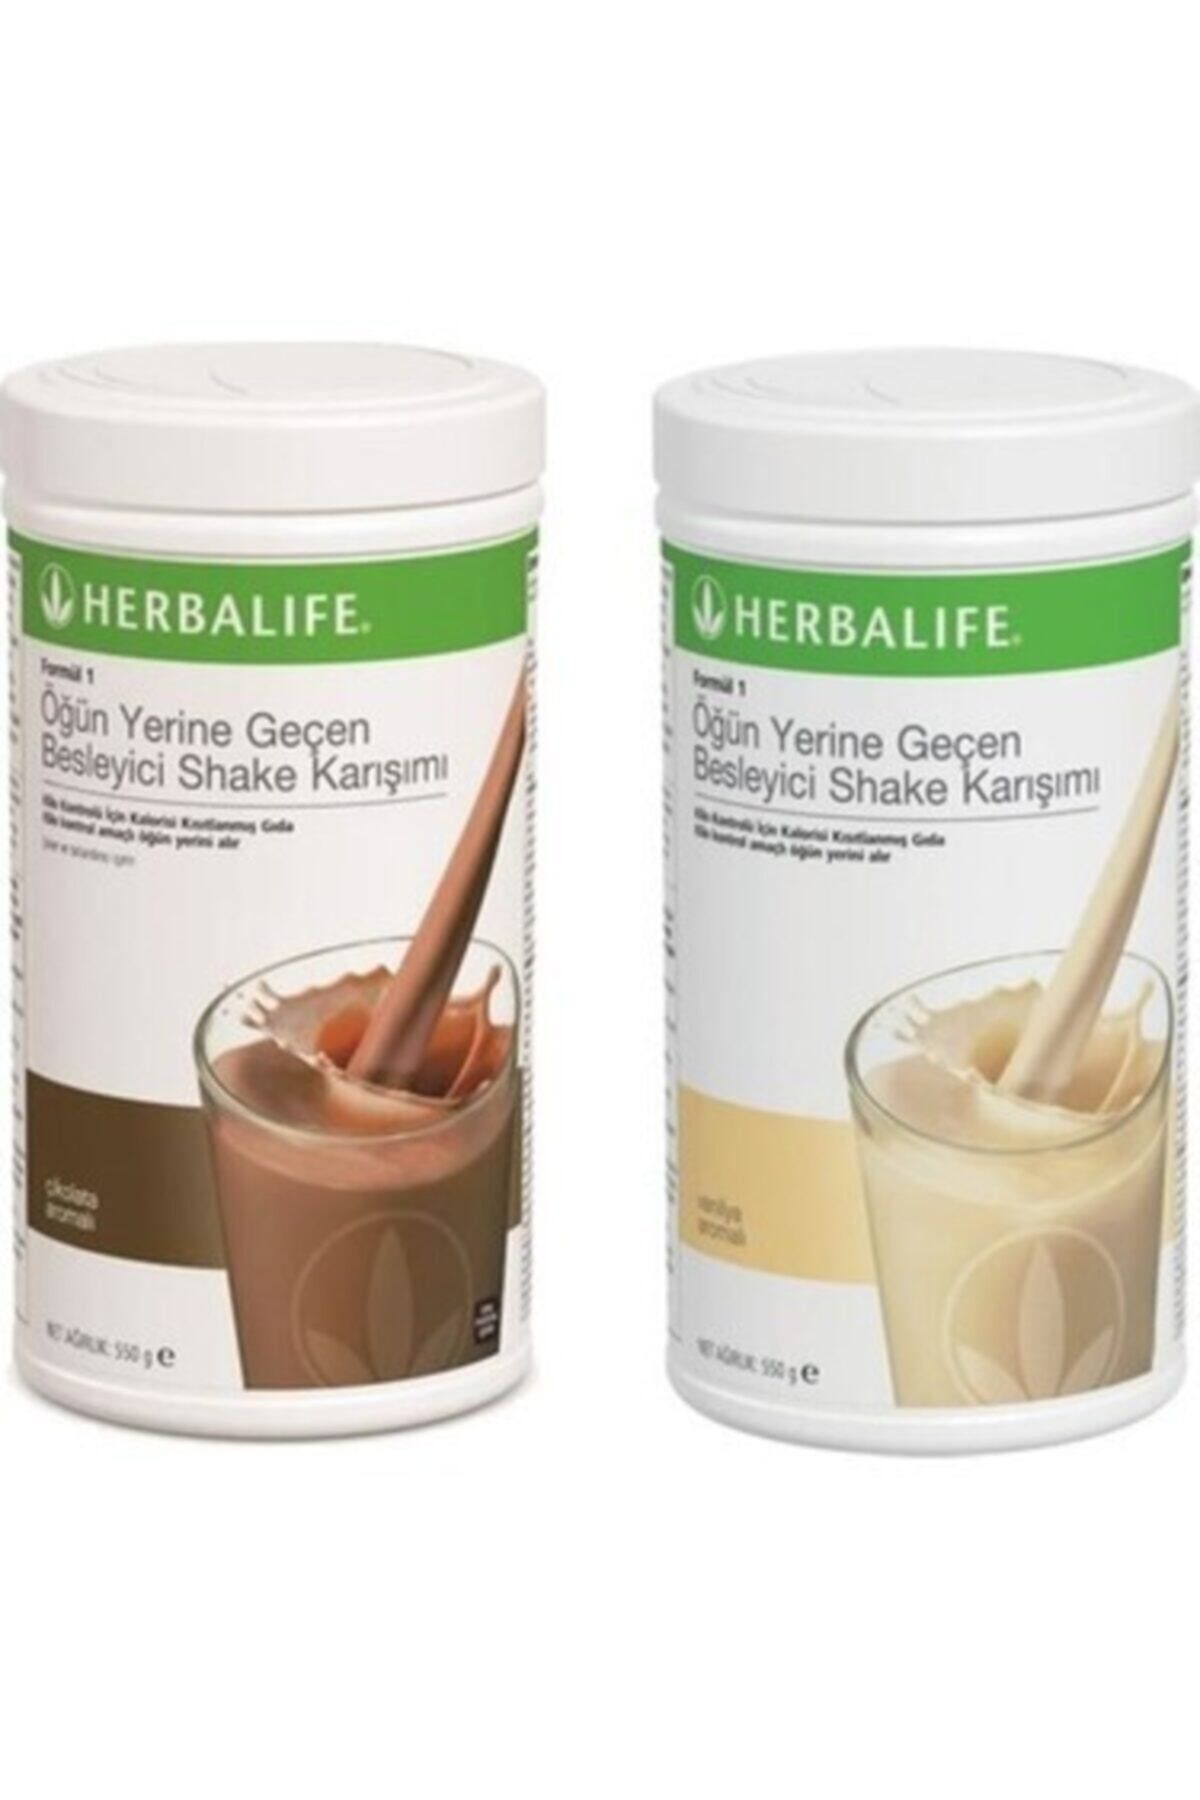 Herbalife Formül 1 Öğün Yerine Geçen Besleyici Shake Karışımı Çikolata + Vanilya 550 gr